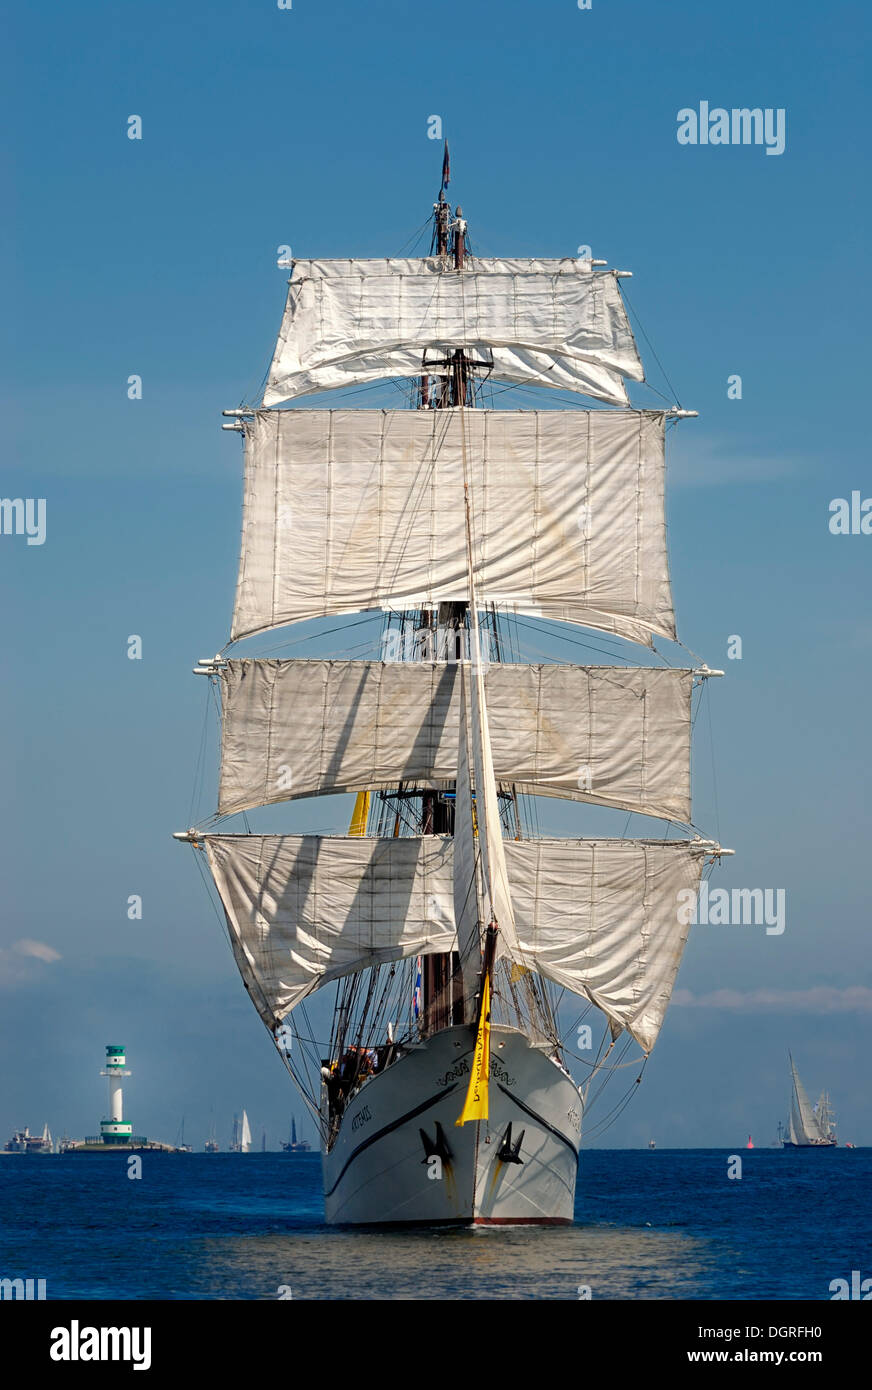 Totalmente manipuladas de tres mástiles, barca de vela tradicional, windjammer friedrichsort arthemis con el faro en la distancia Foto de stock